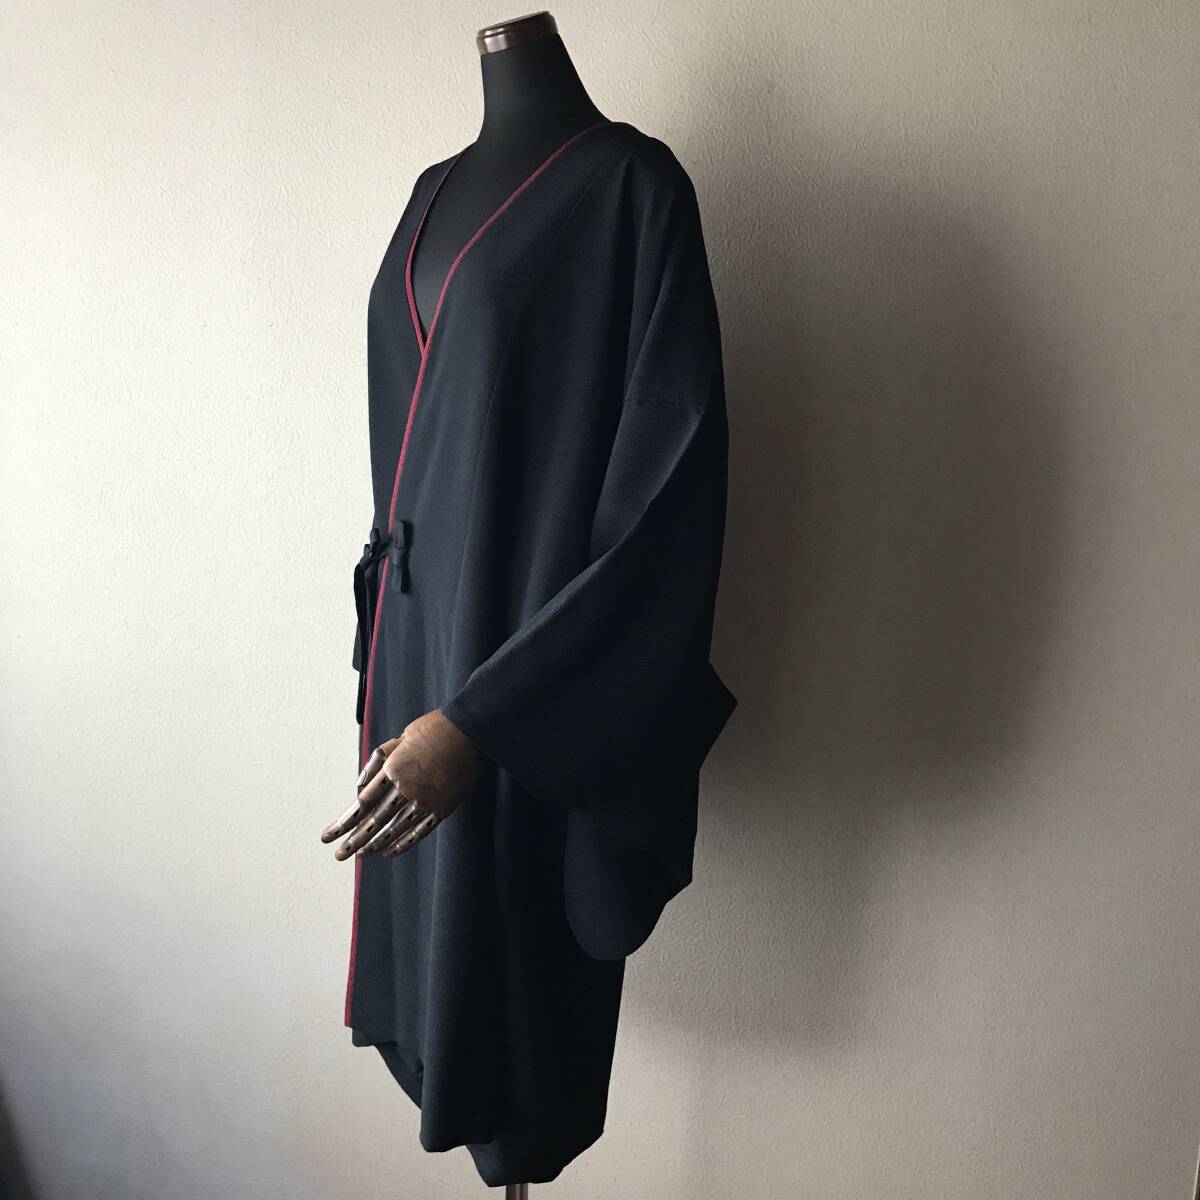  свободно размер. верхняя одежда * японский костюм пальто * чёрный . темно-красный цвет. линия . аккуратный . модный впечатление!* длина одежды 96.5* ширина 66